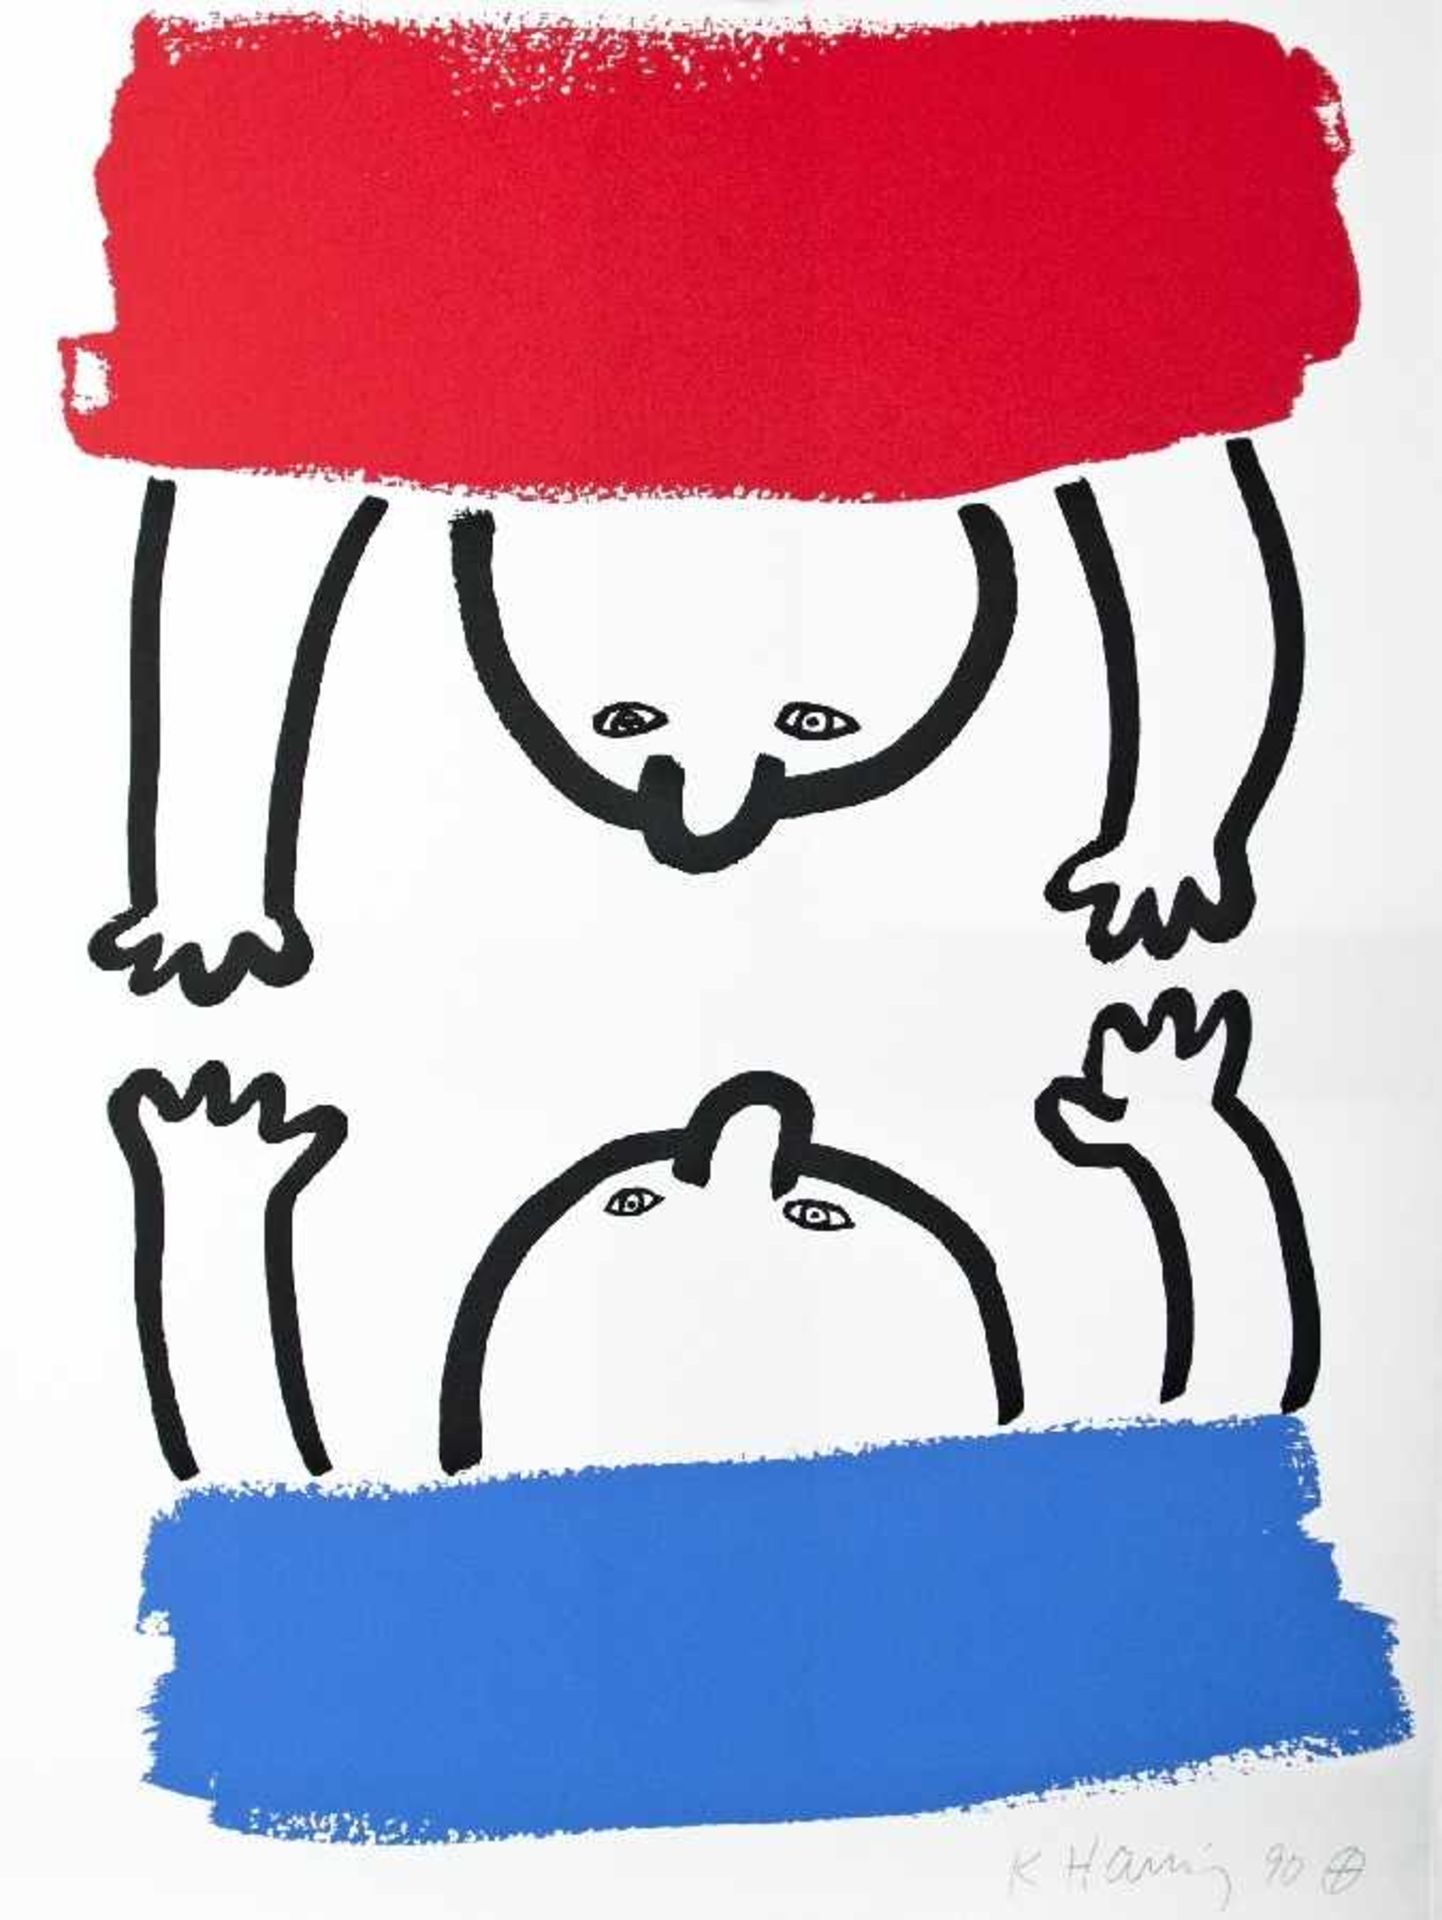 Keith Haring 1958 Kutztown - 1990 New York The story of red + blue Mappe mit Siebdrucken auf Papier; - Bild 18 aus 21